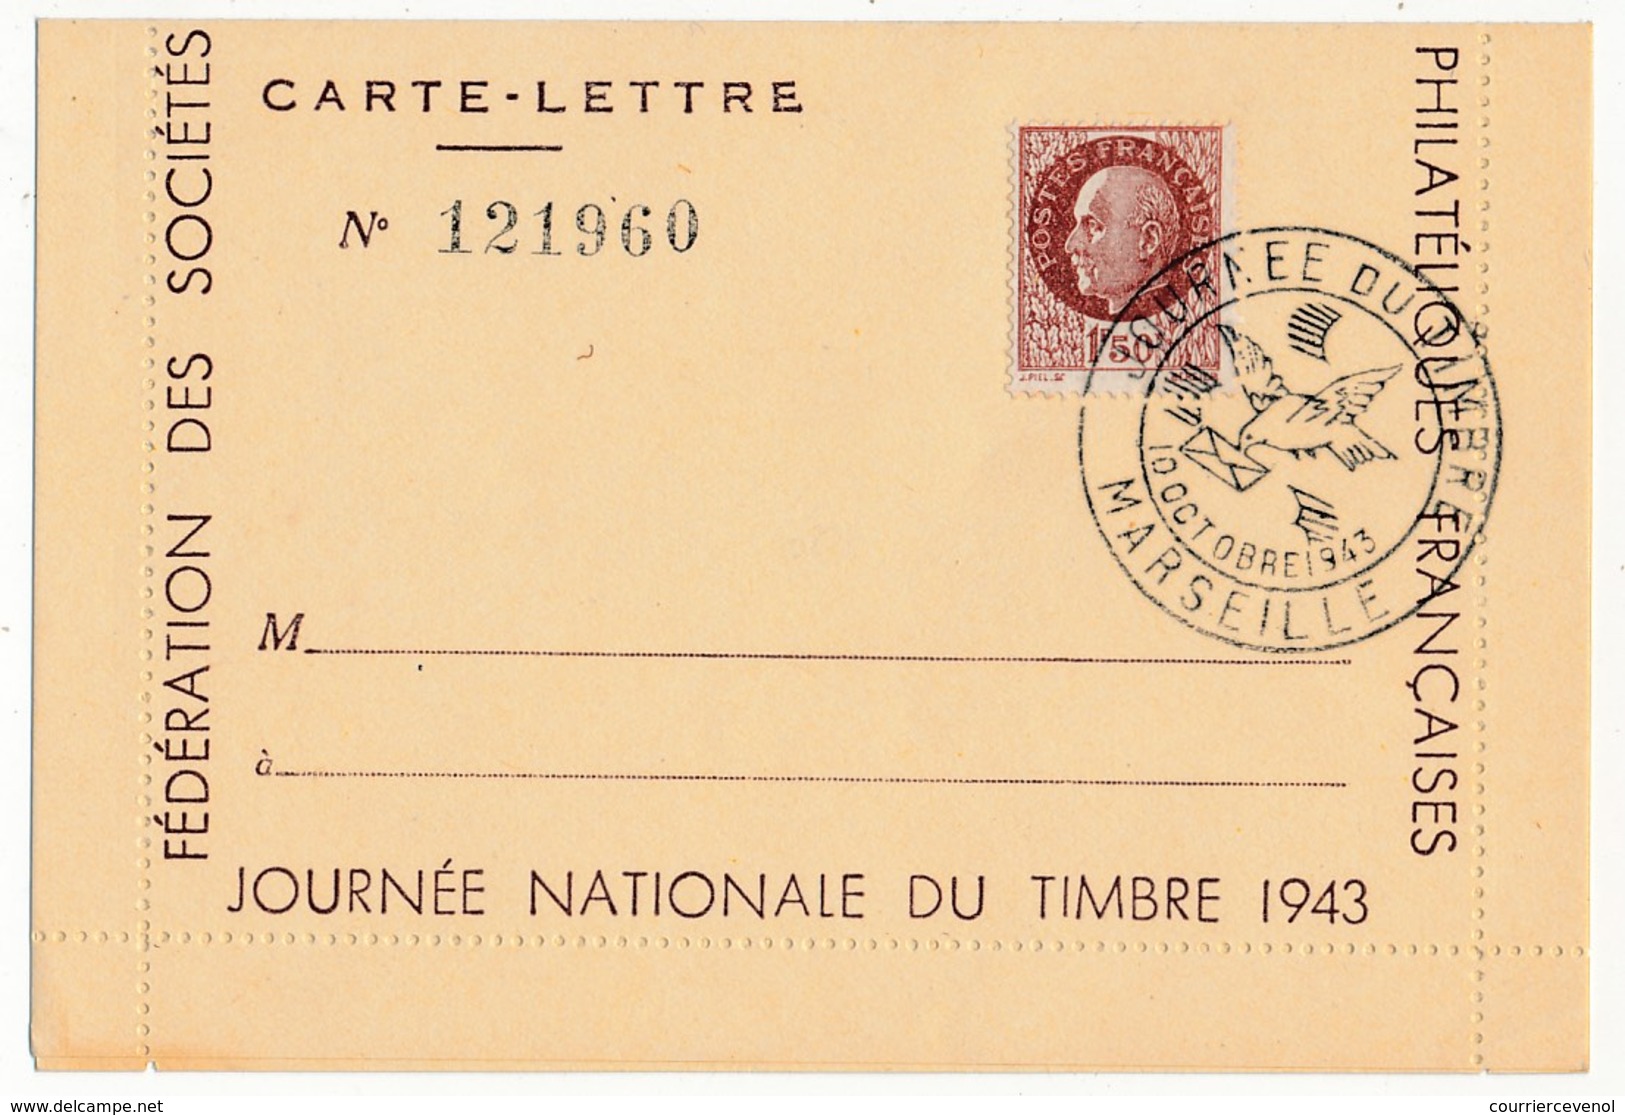 FRANCE - Carte-lettre Illustrée - Journée Du Timbre 1943 MARSEILLE - Dessin DRAIM - Affr 1,50 Bersier, Cachet Temporaire - Día Del Sello